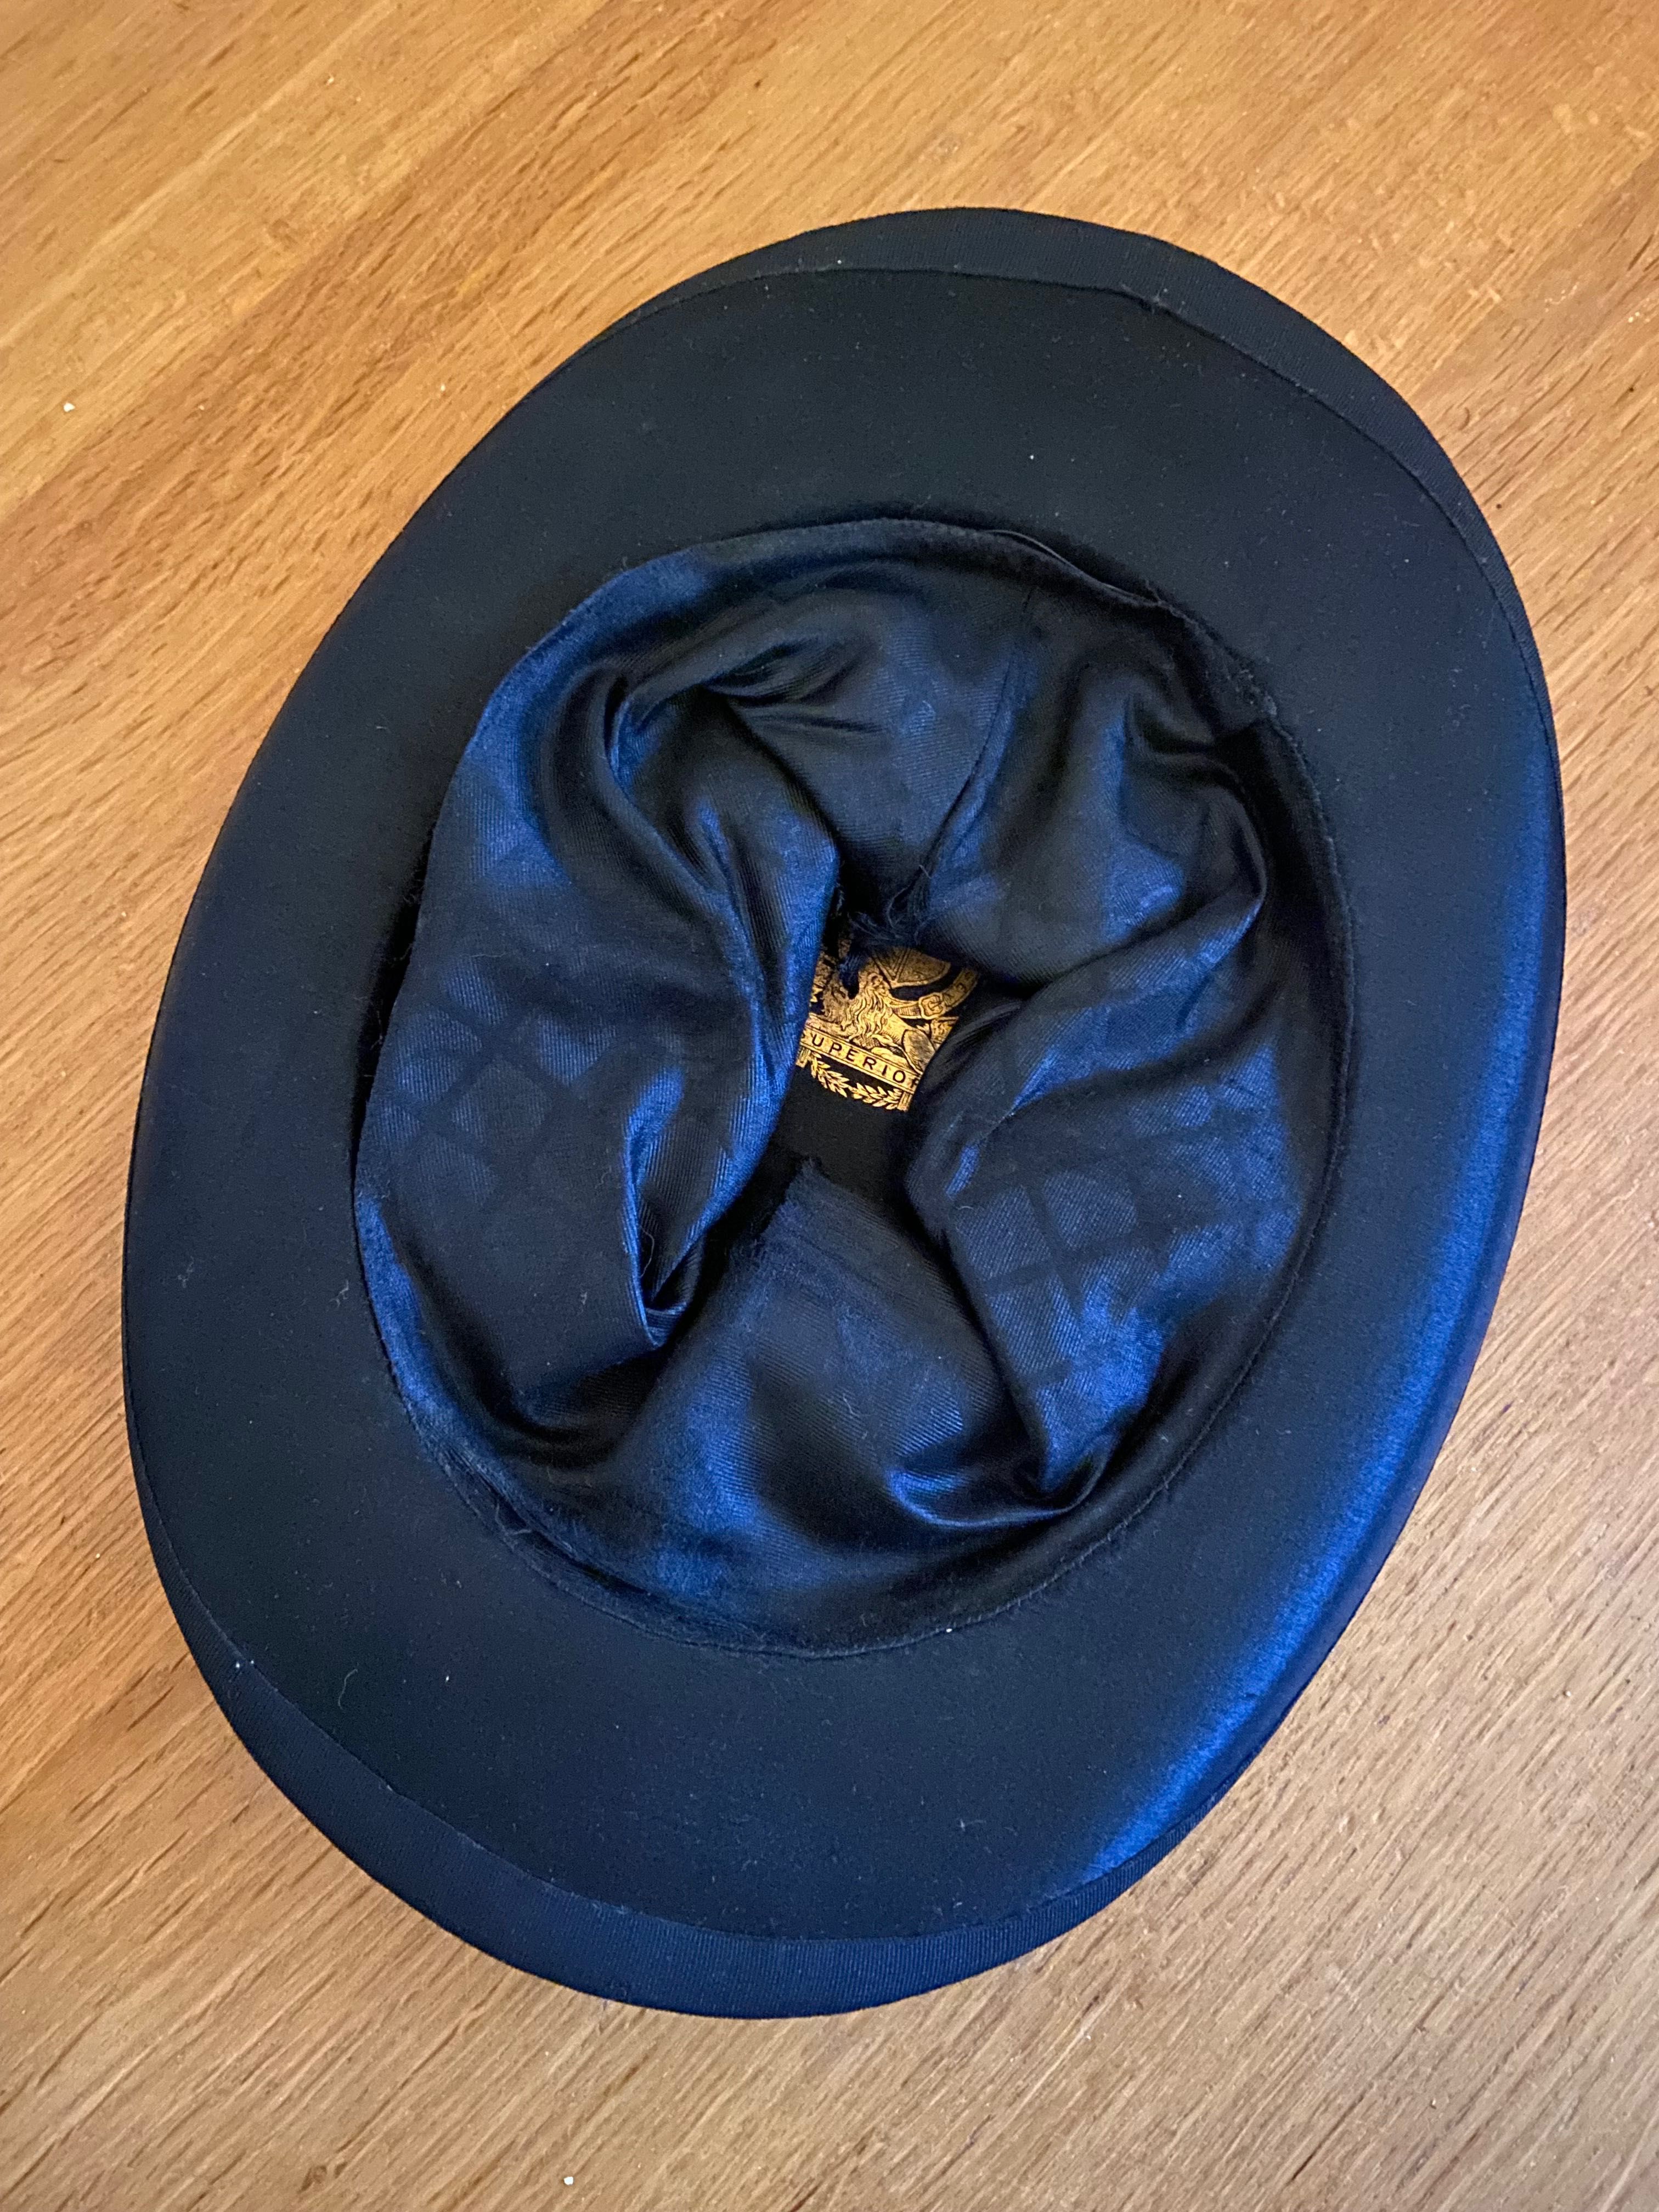 Rara cartola chapéu cilindro clack centenária em cetim